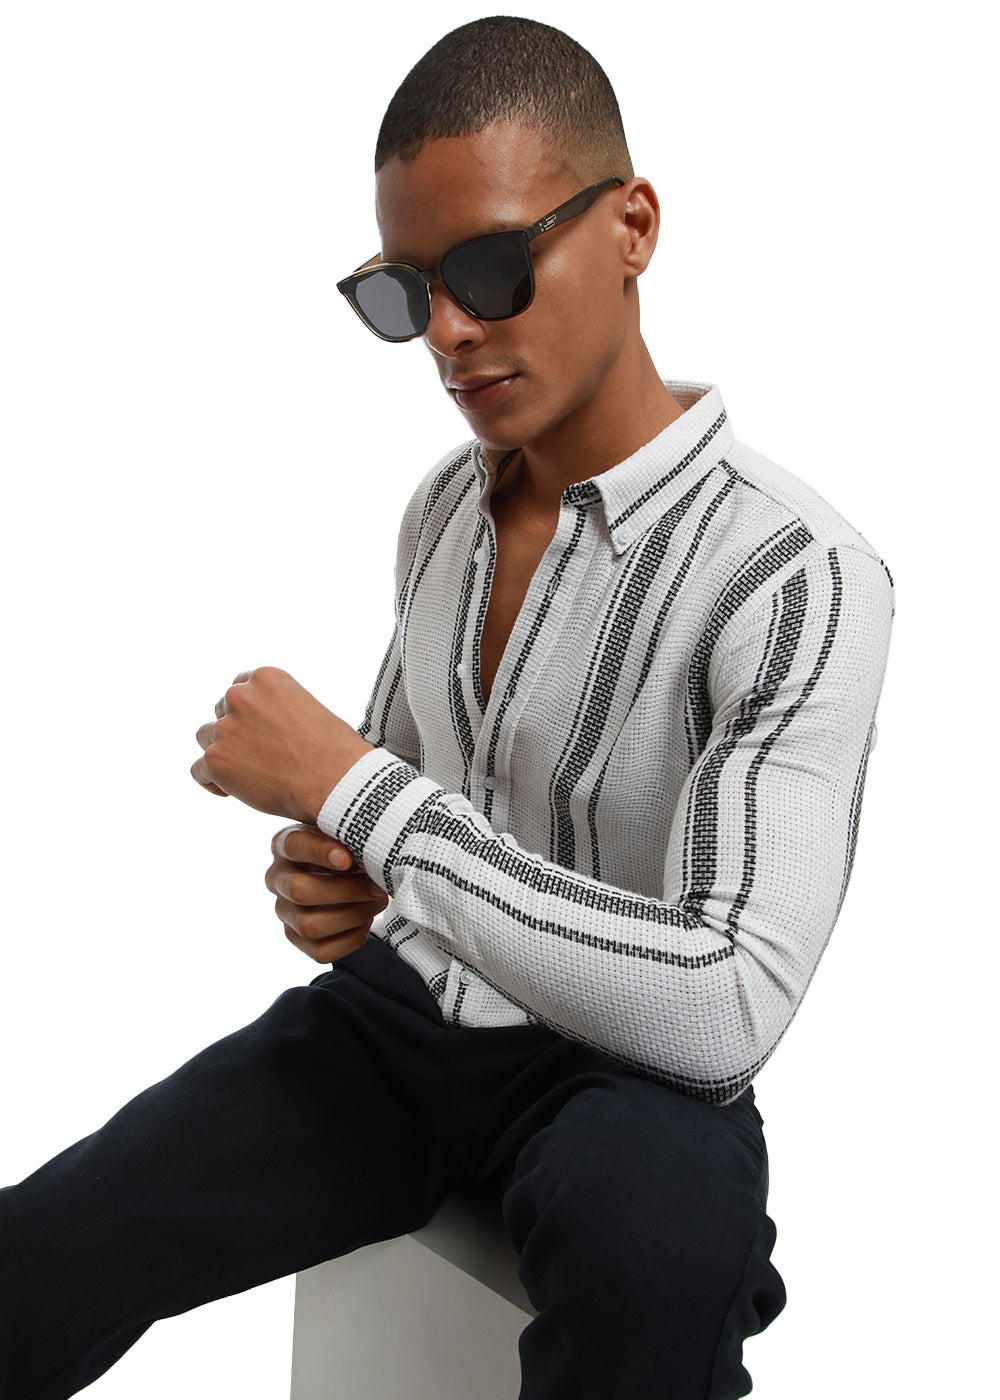 Aspect Stripe White shirt